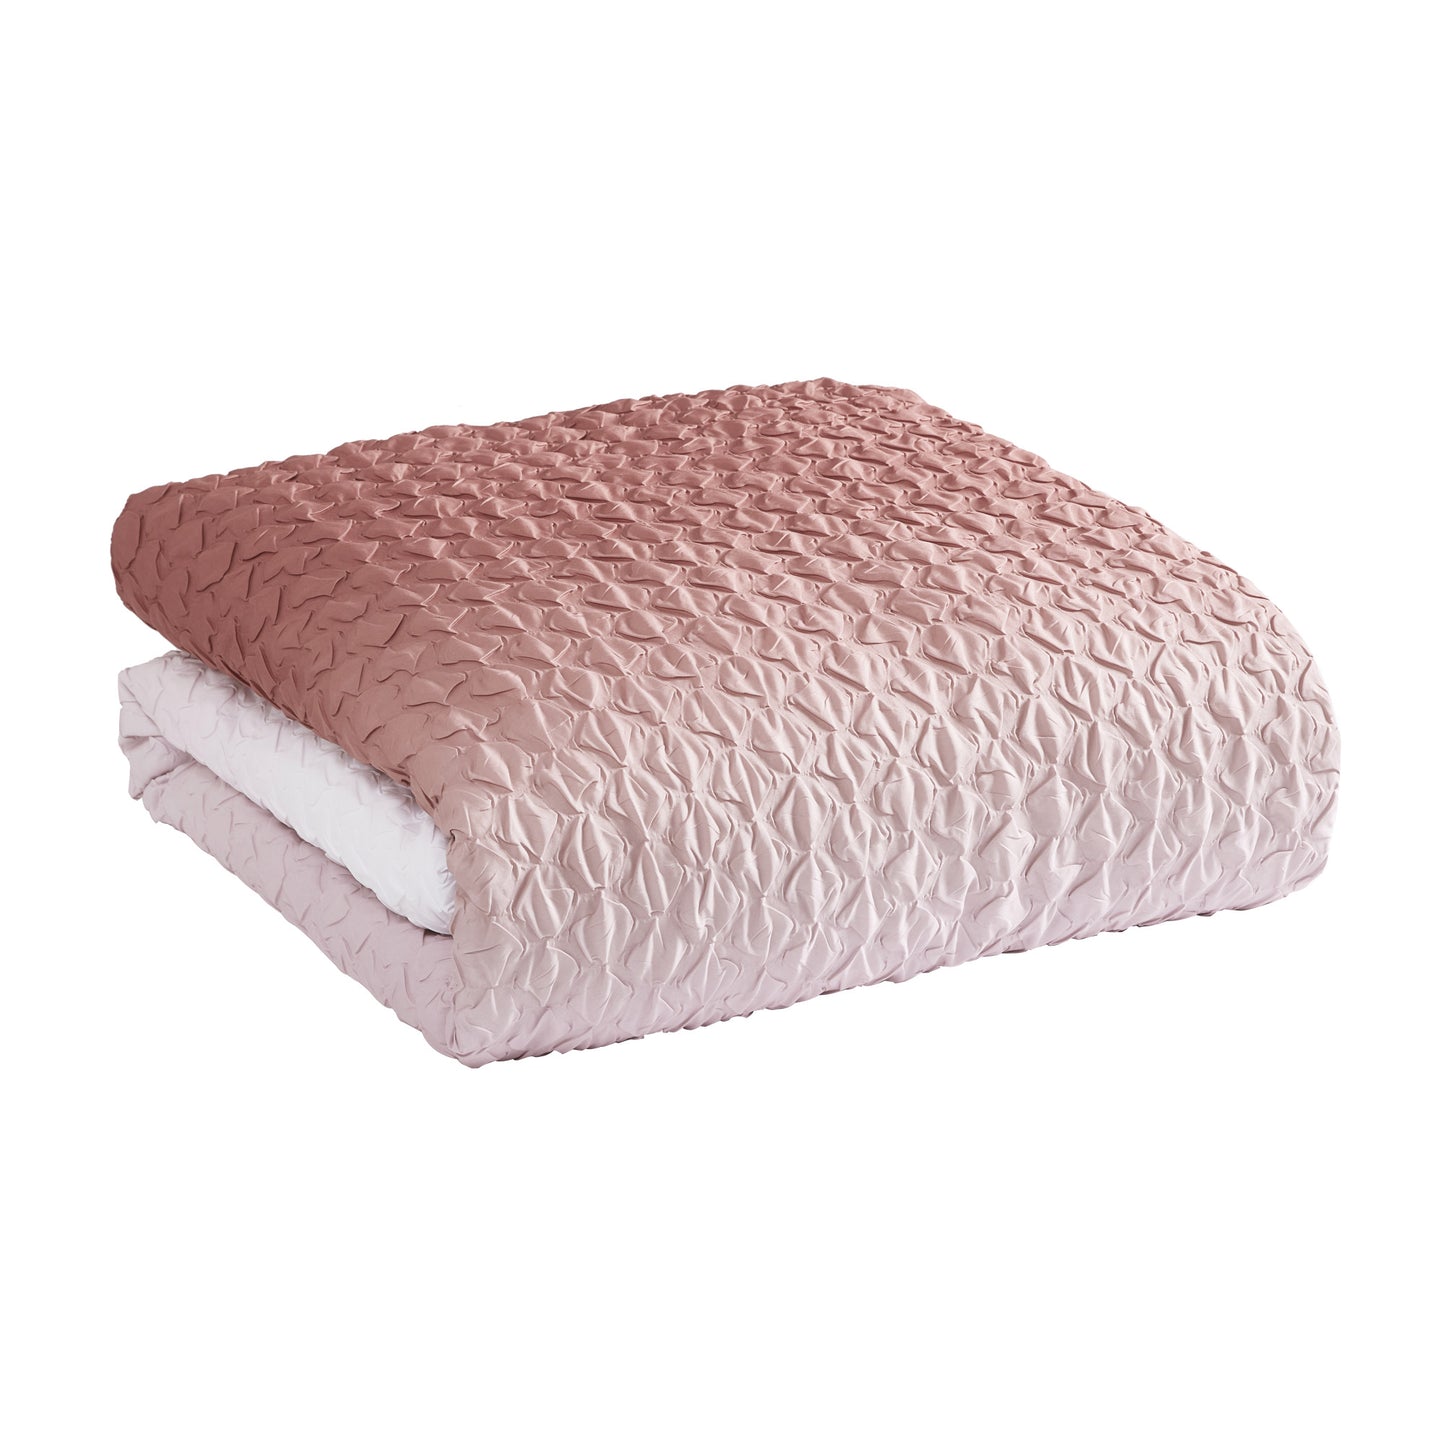 Microsculpt Ombre Honeycomb Comforter Set